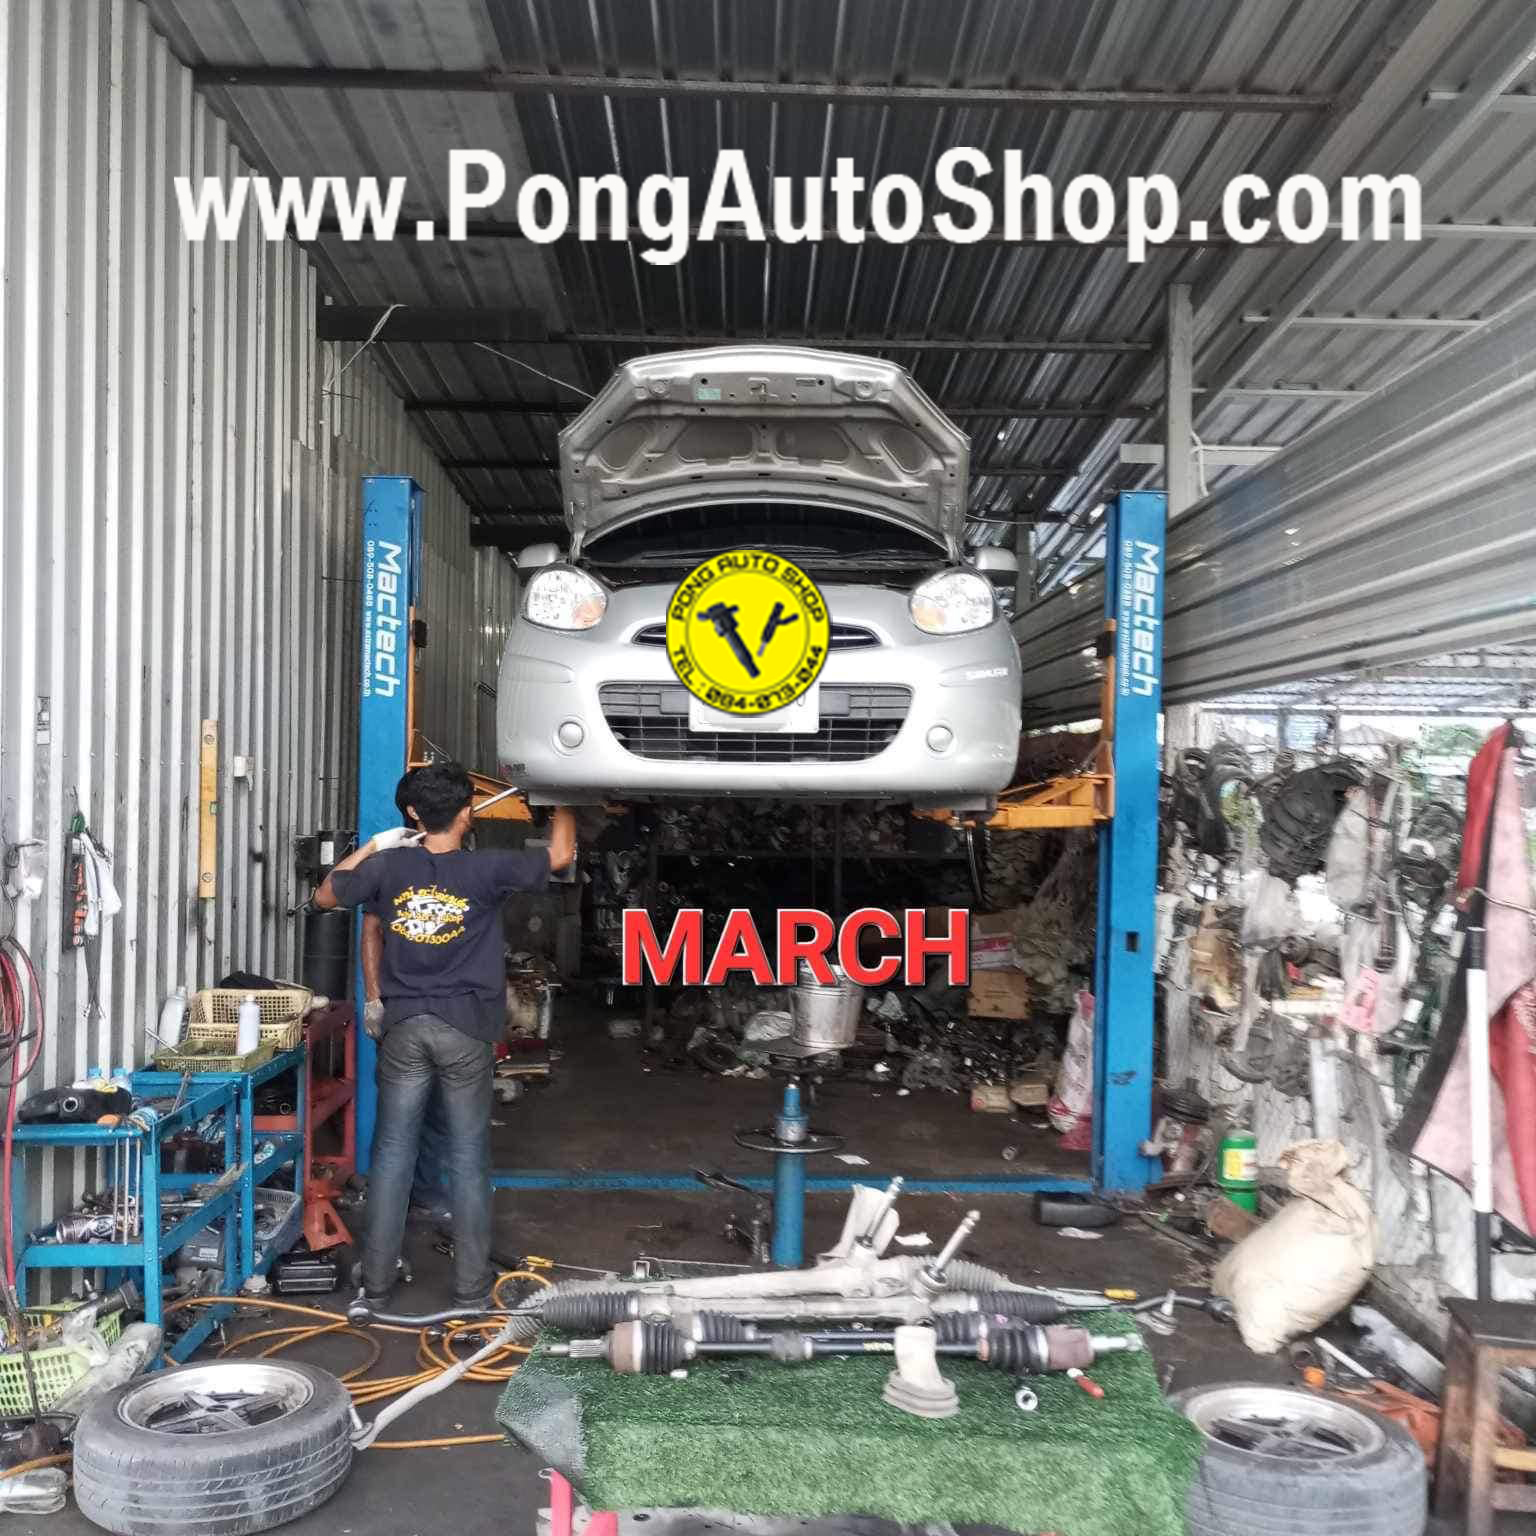 พงษ์ ออโต้ชอป, Pong Auto Shop